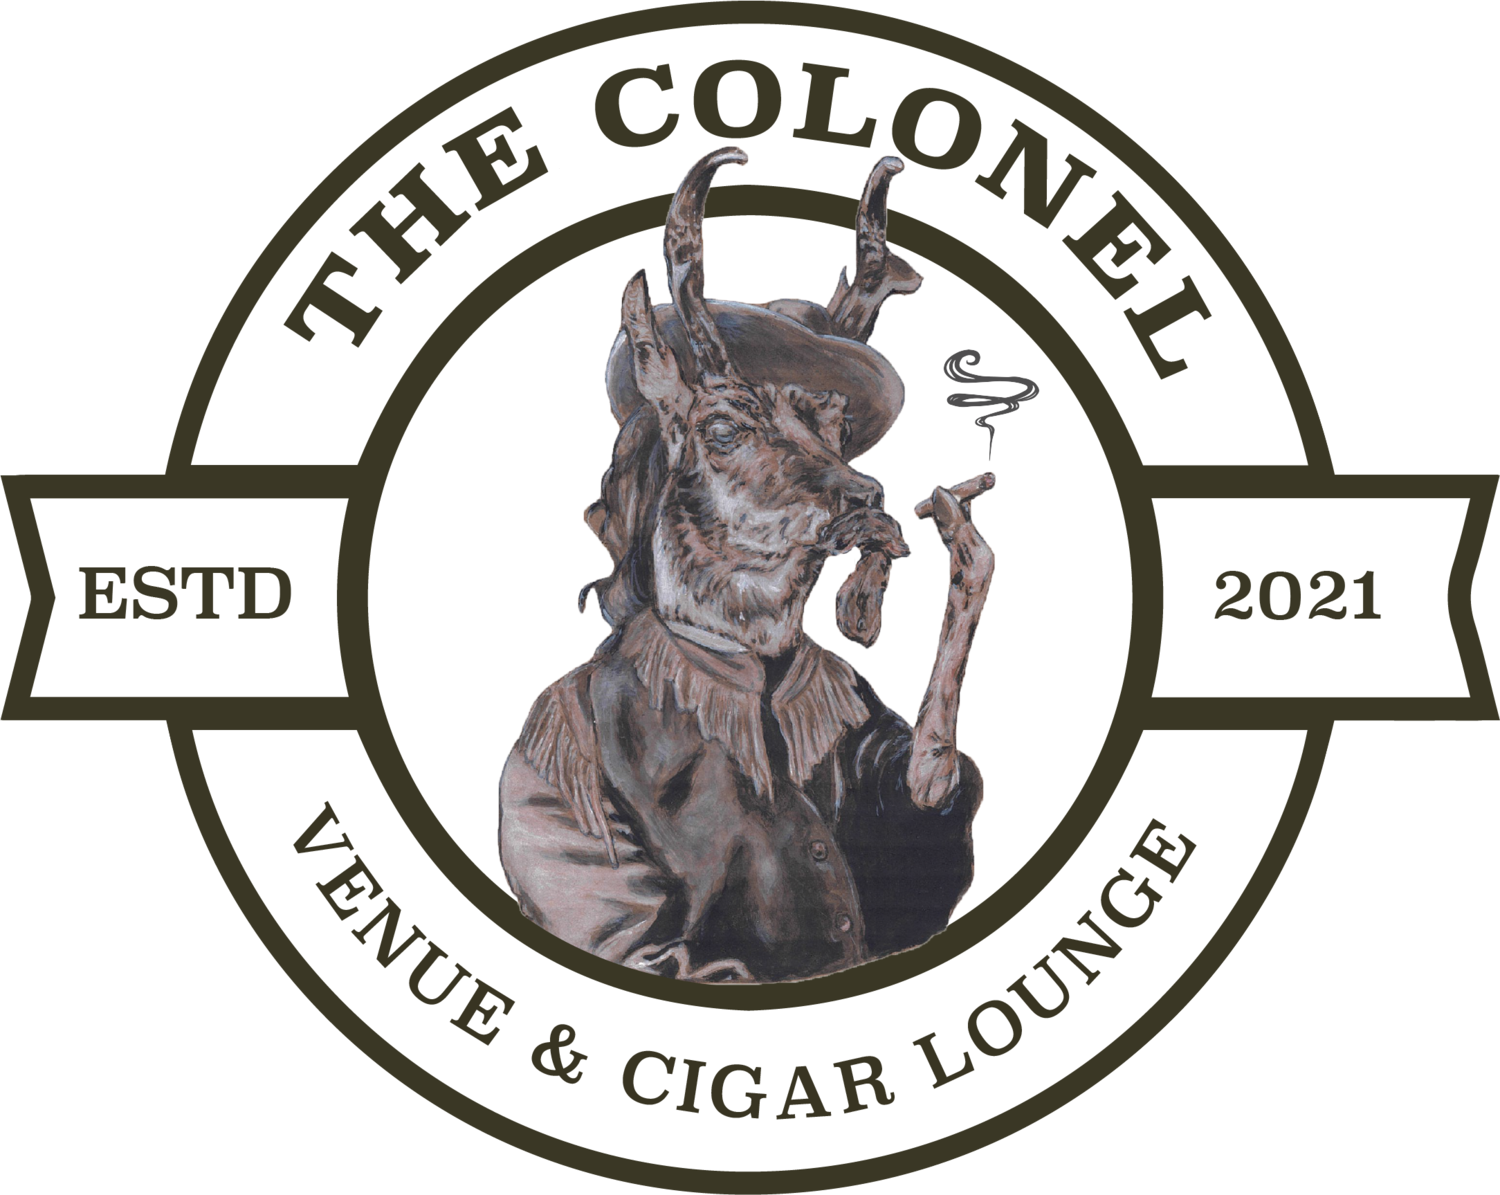 The Colonel Venue &amp; Cigar Lounge